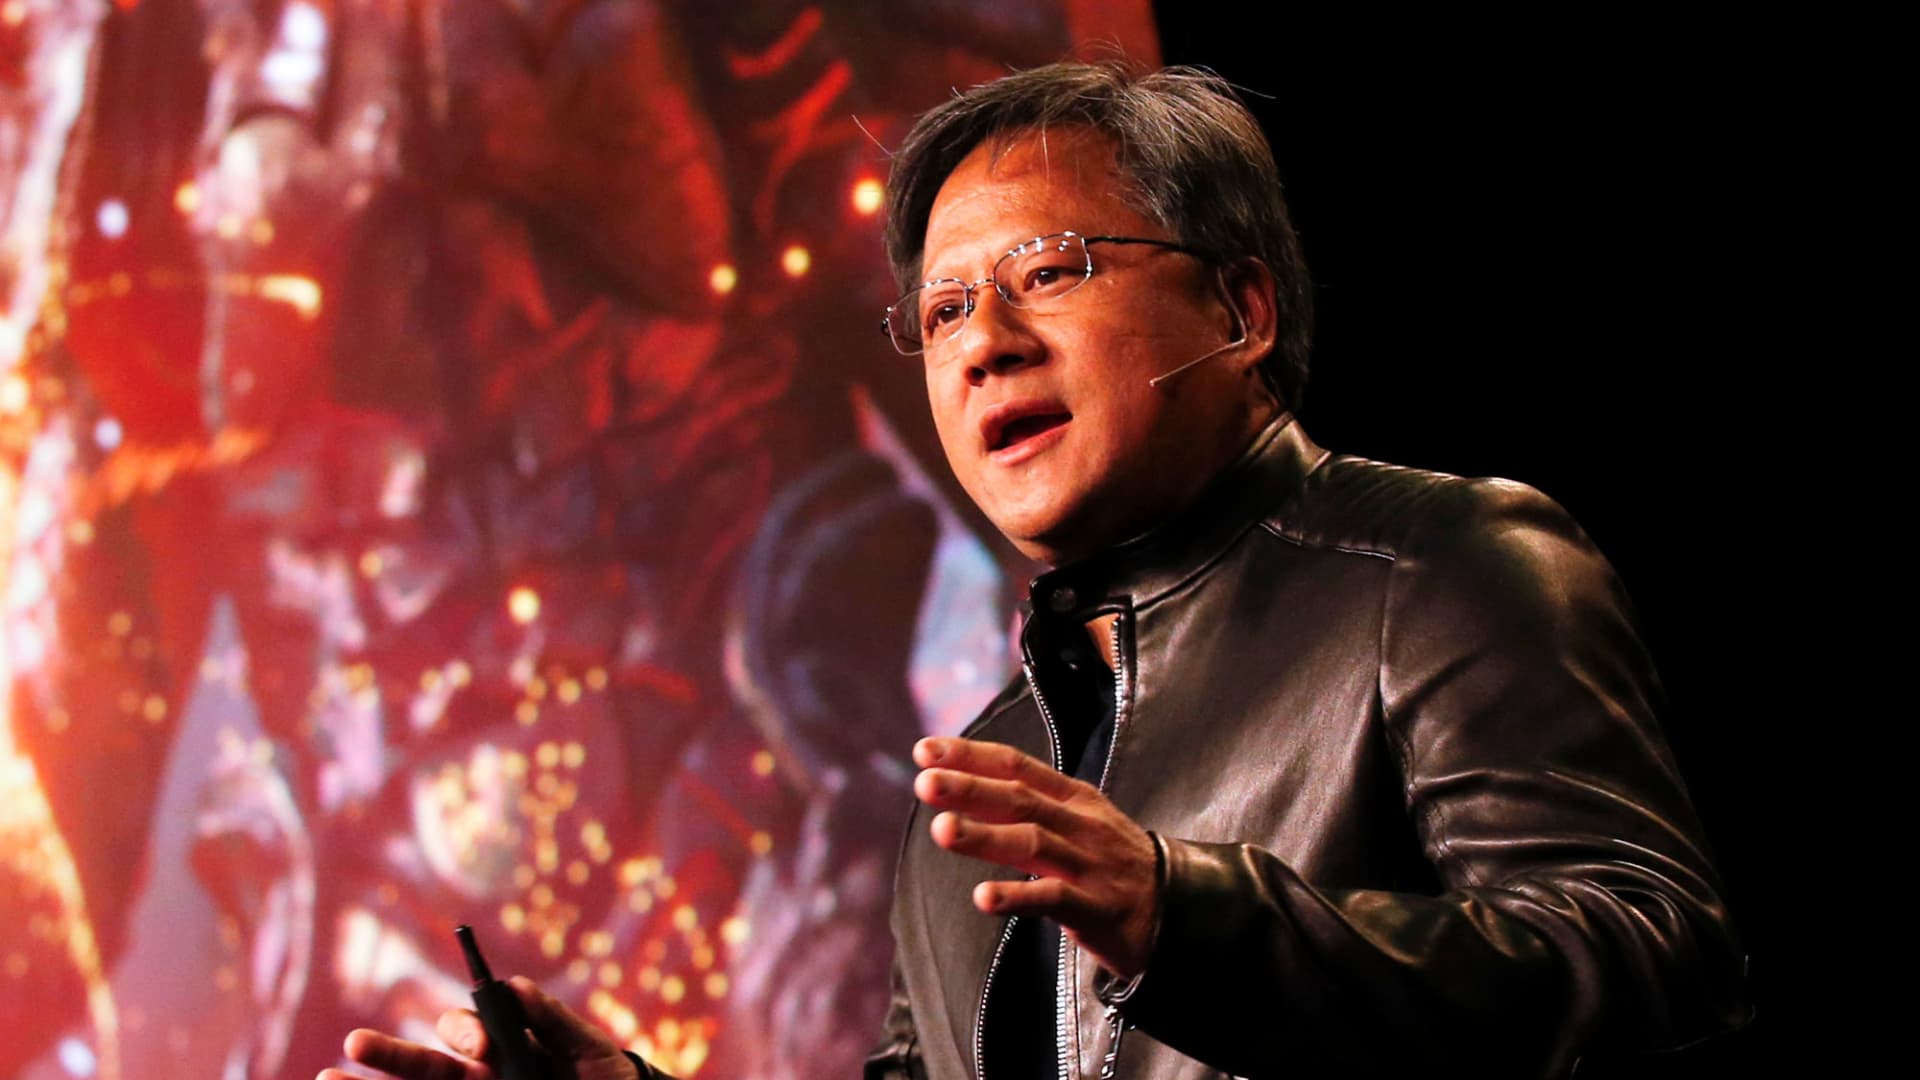 Nvidia warns on second quarter revenue, shares dip